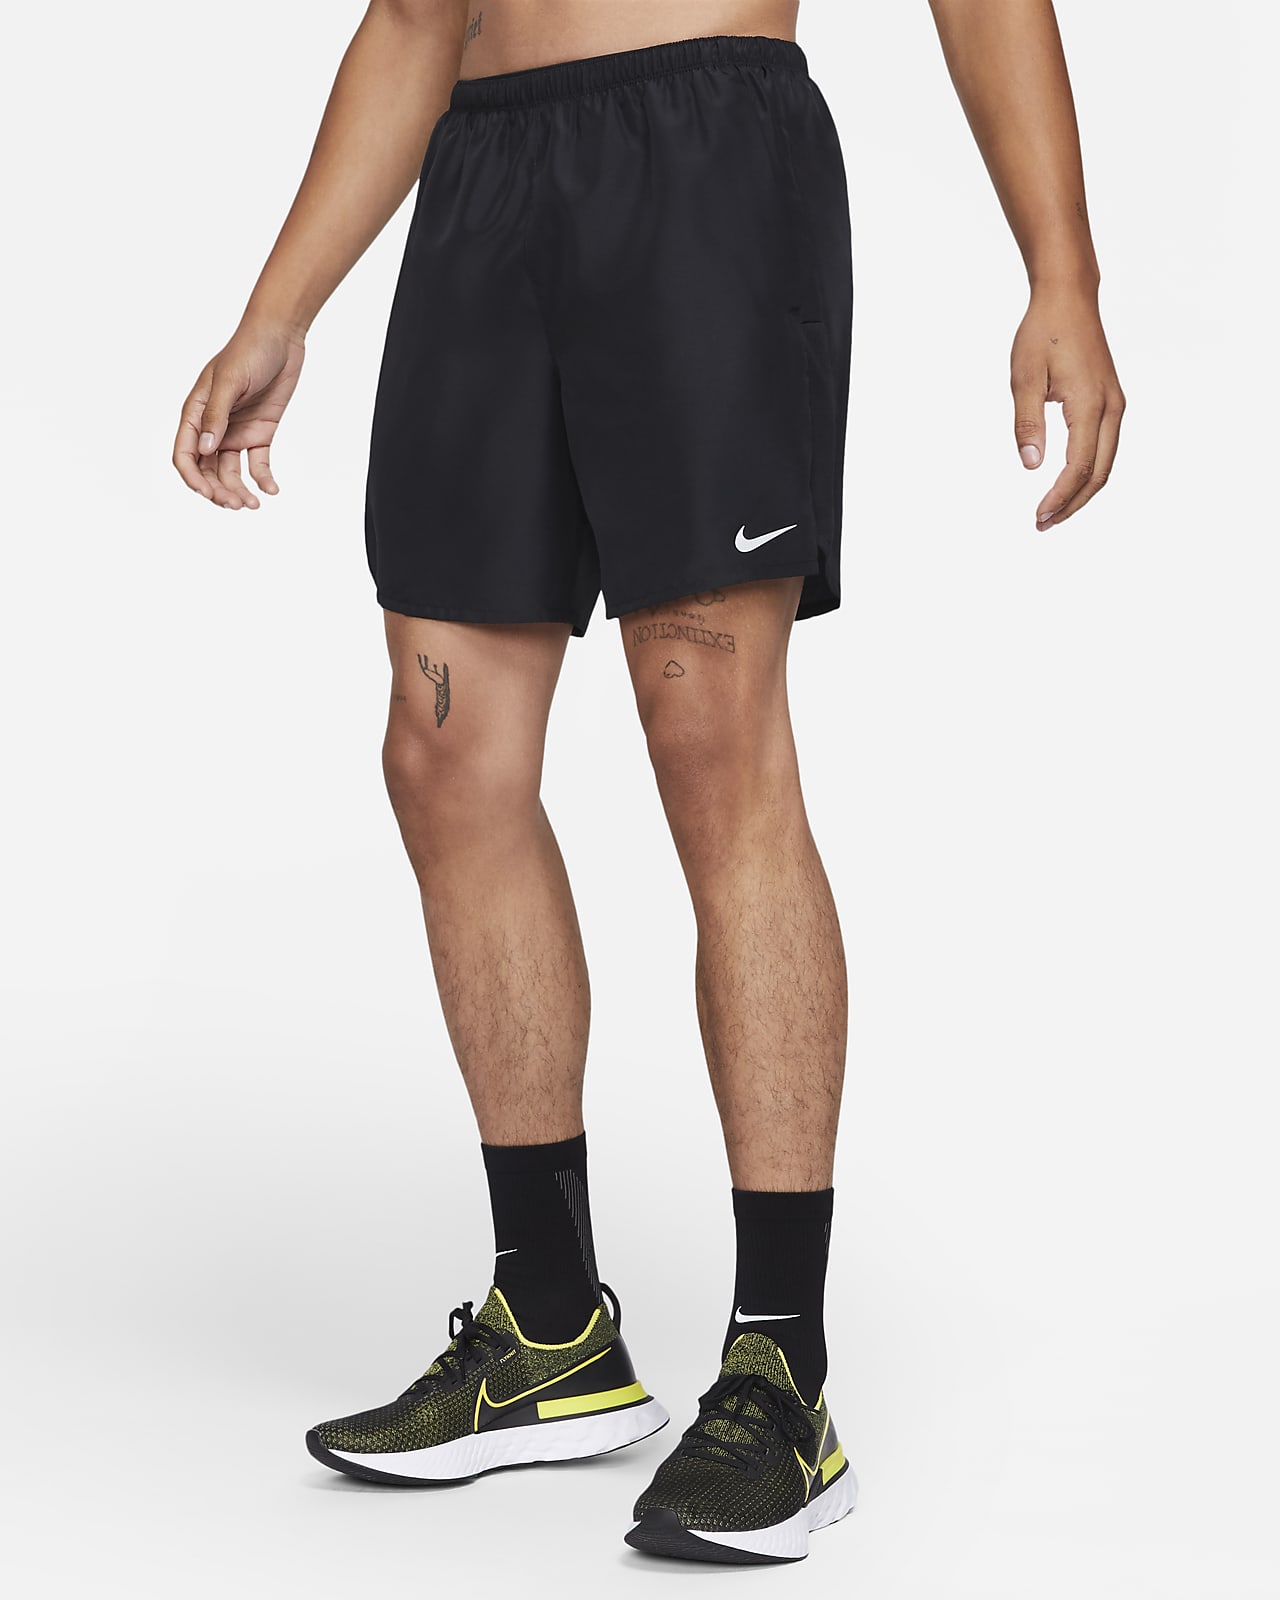 Short de running avec sous-short intégré Nike Challenger 18 cm pour Homme